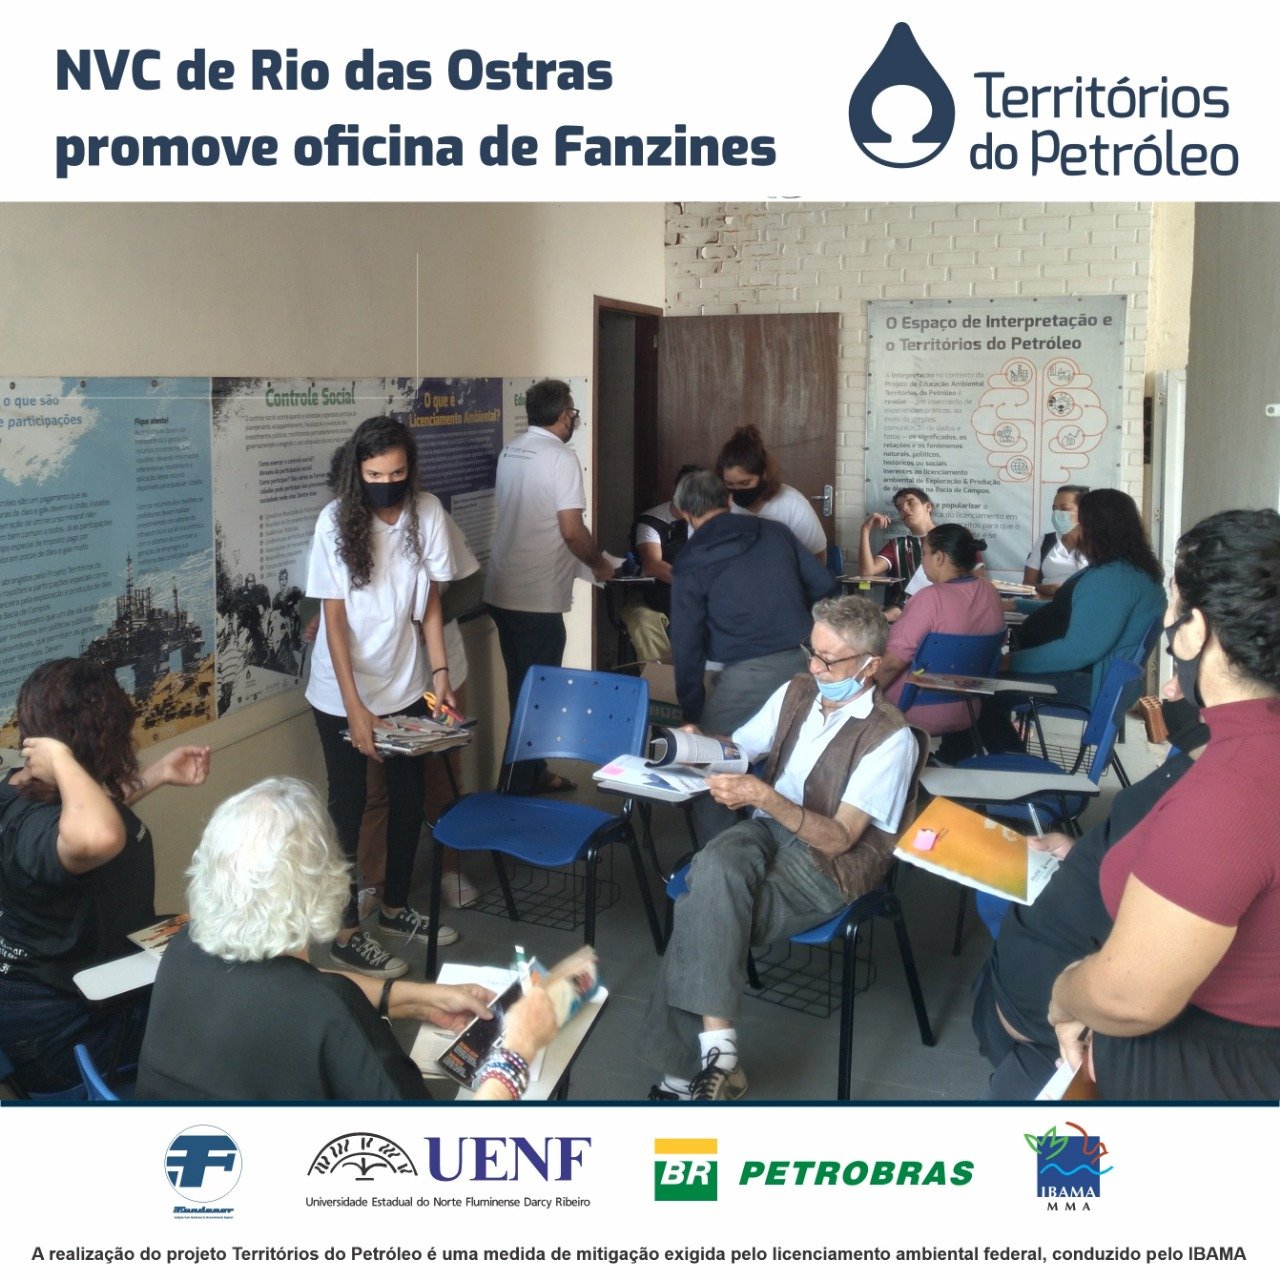 NVC Rio das Ostras promove Oficina de Fanzines